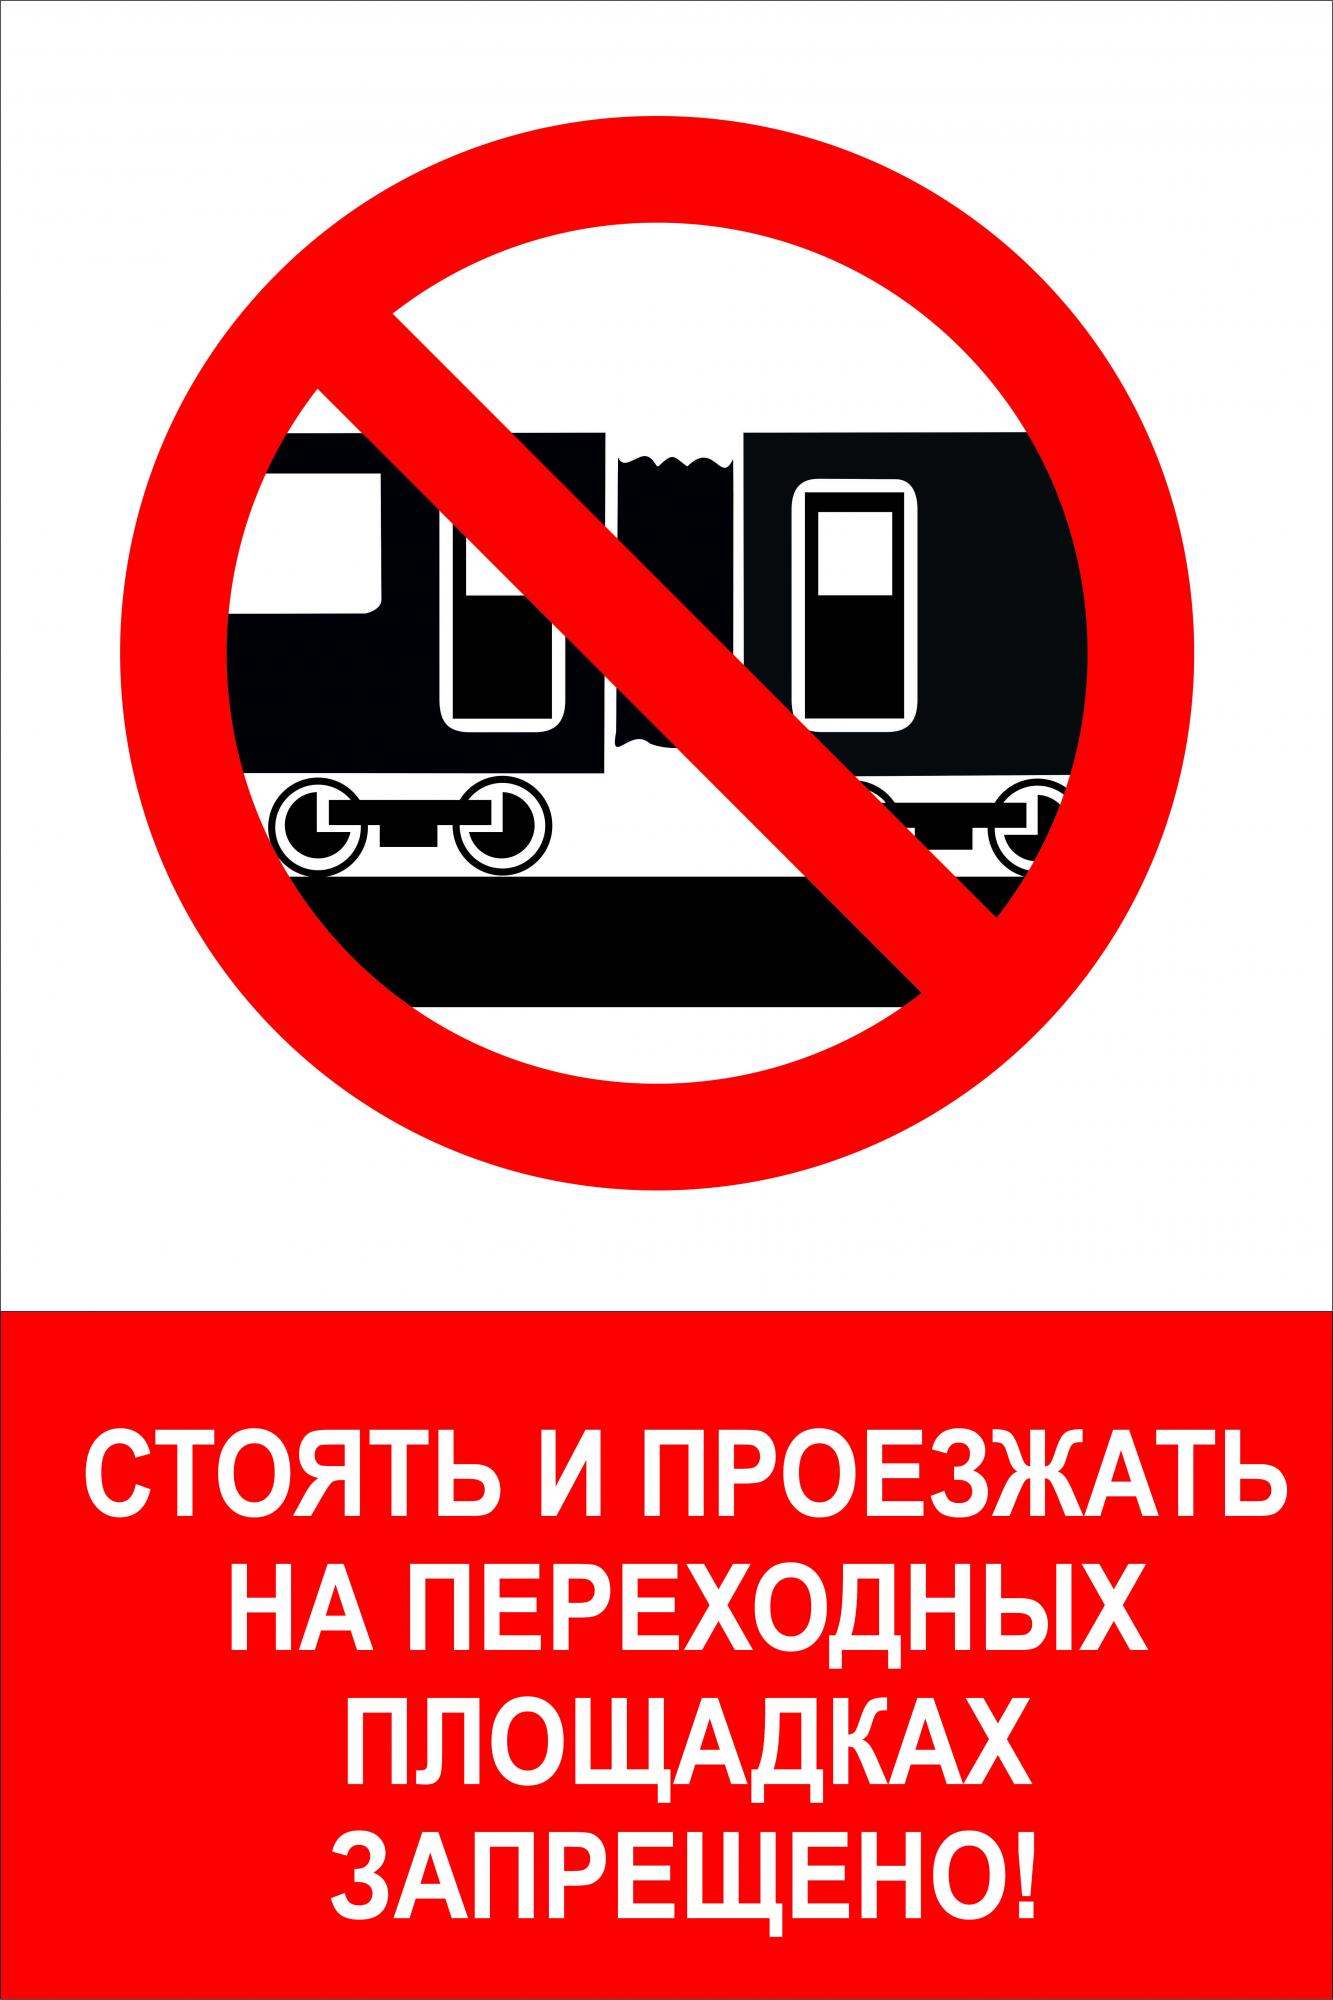 На железной дороге запрещено